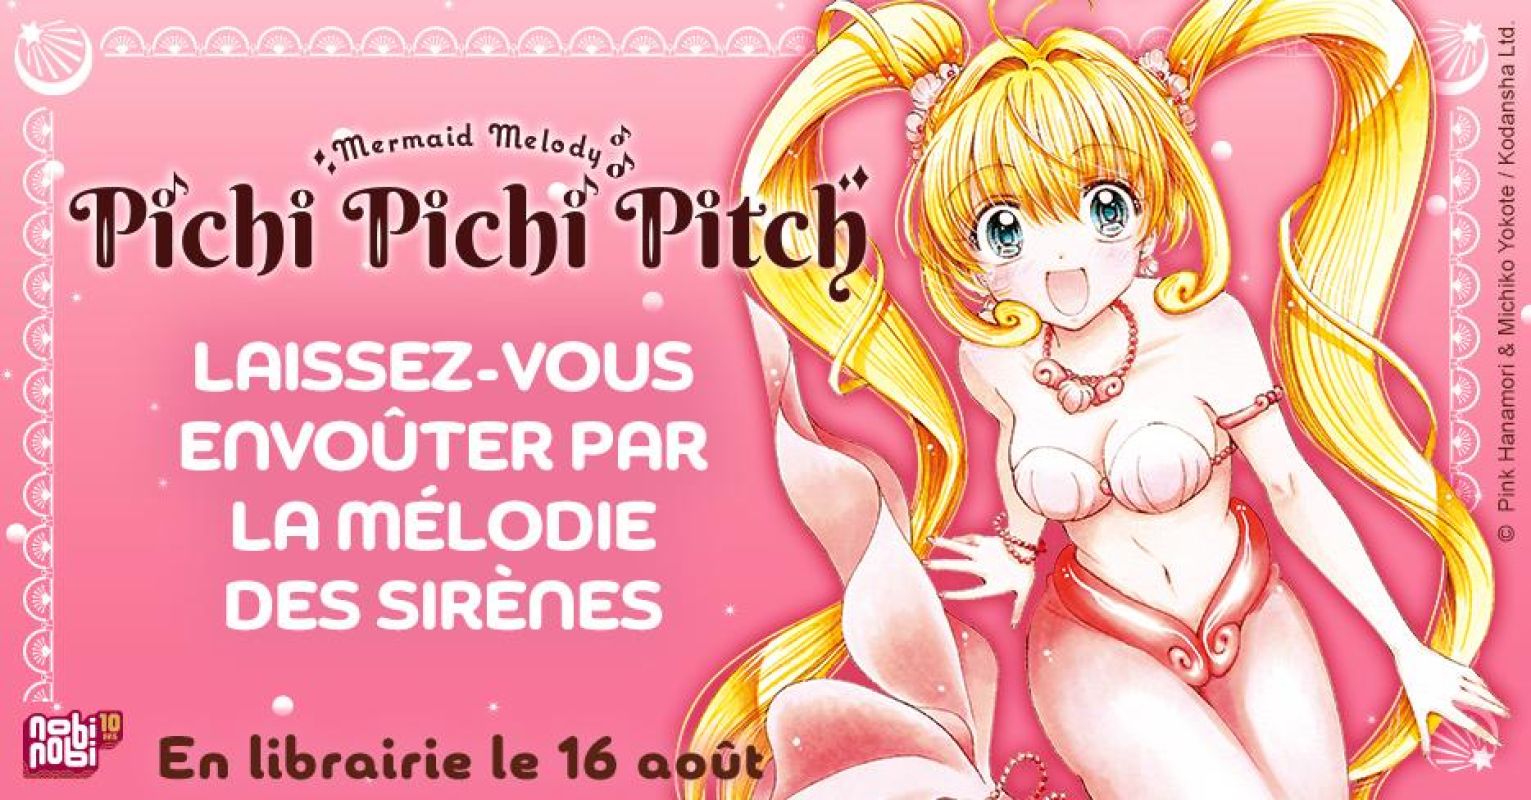 Pichi Pichi Pitch - Mermaid Melody dans une nouvelle édition chez nobi nobi !